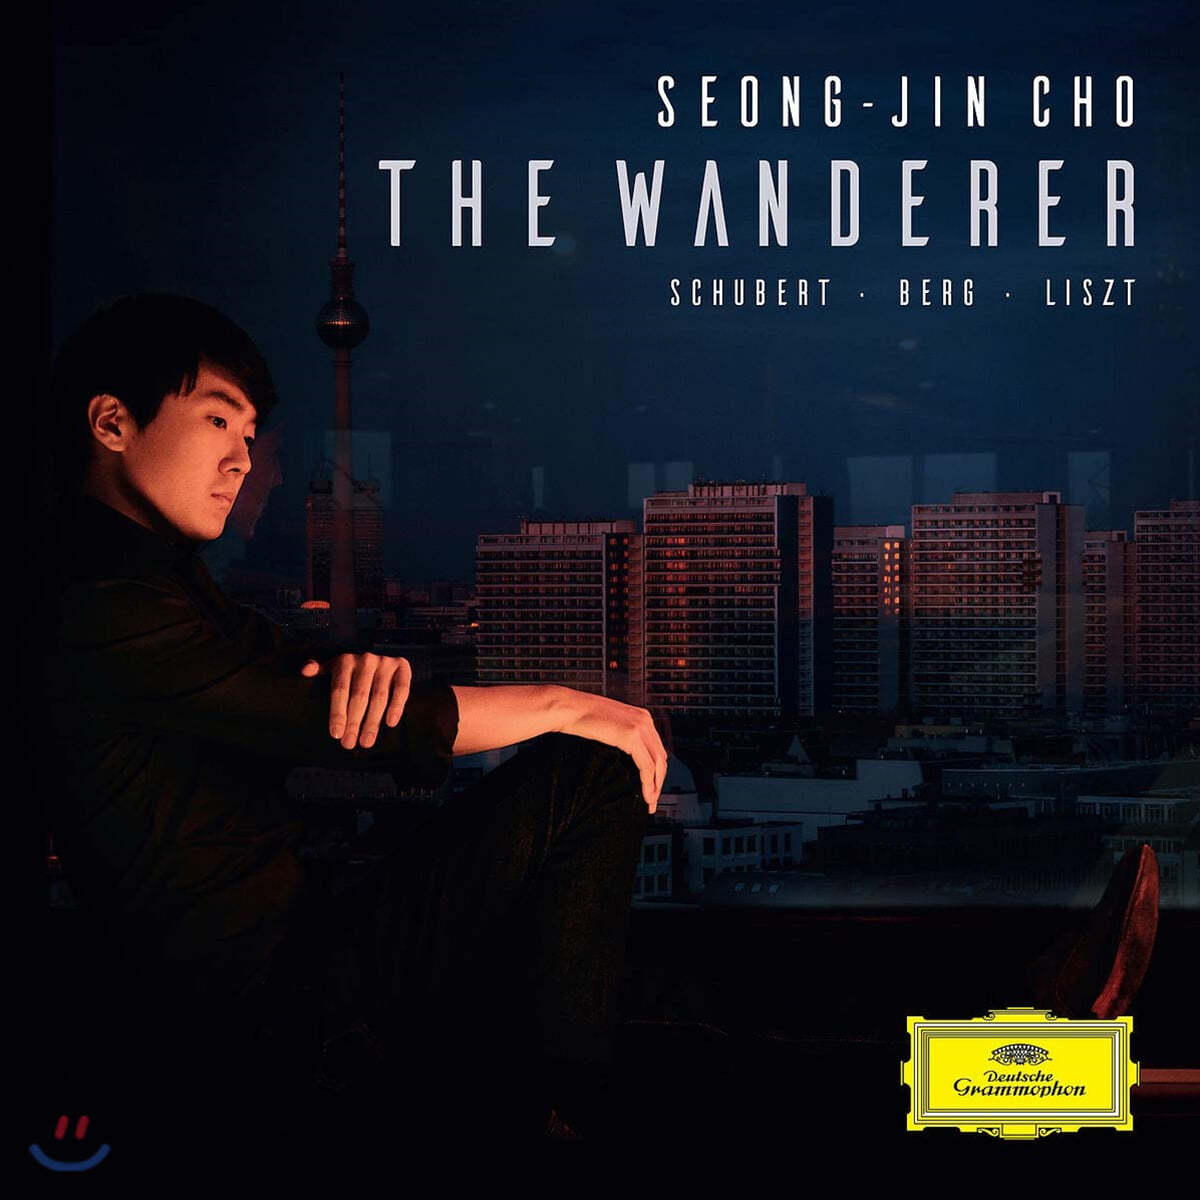 조성진 - 슈베르트: 방랑자 환상곡 / 베르크 & 리스트: 피아노 소나타 (The Wanderer)